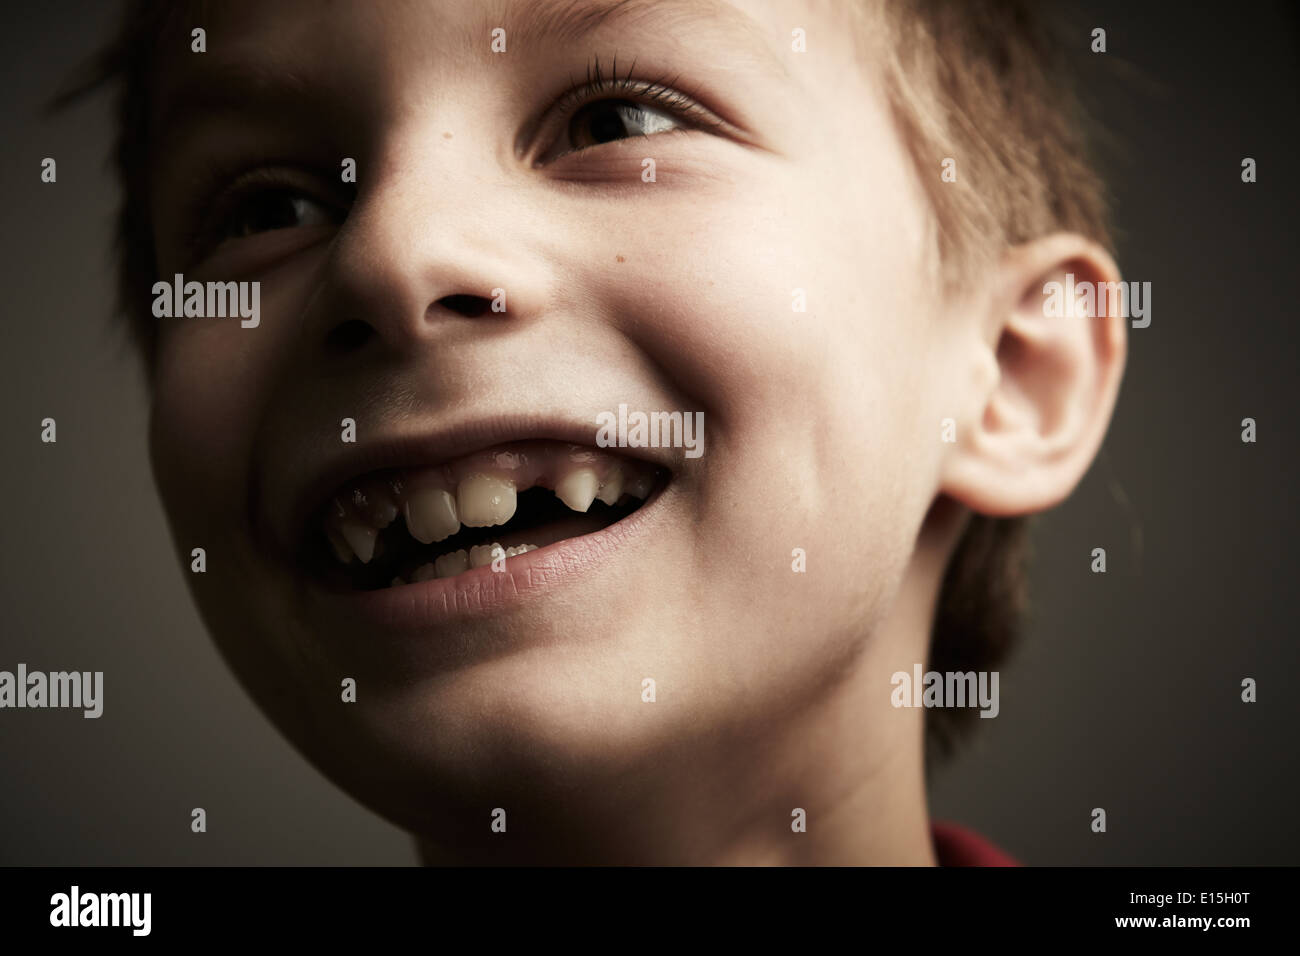 Boy smiling avec écart de dent Banque D'Images